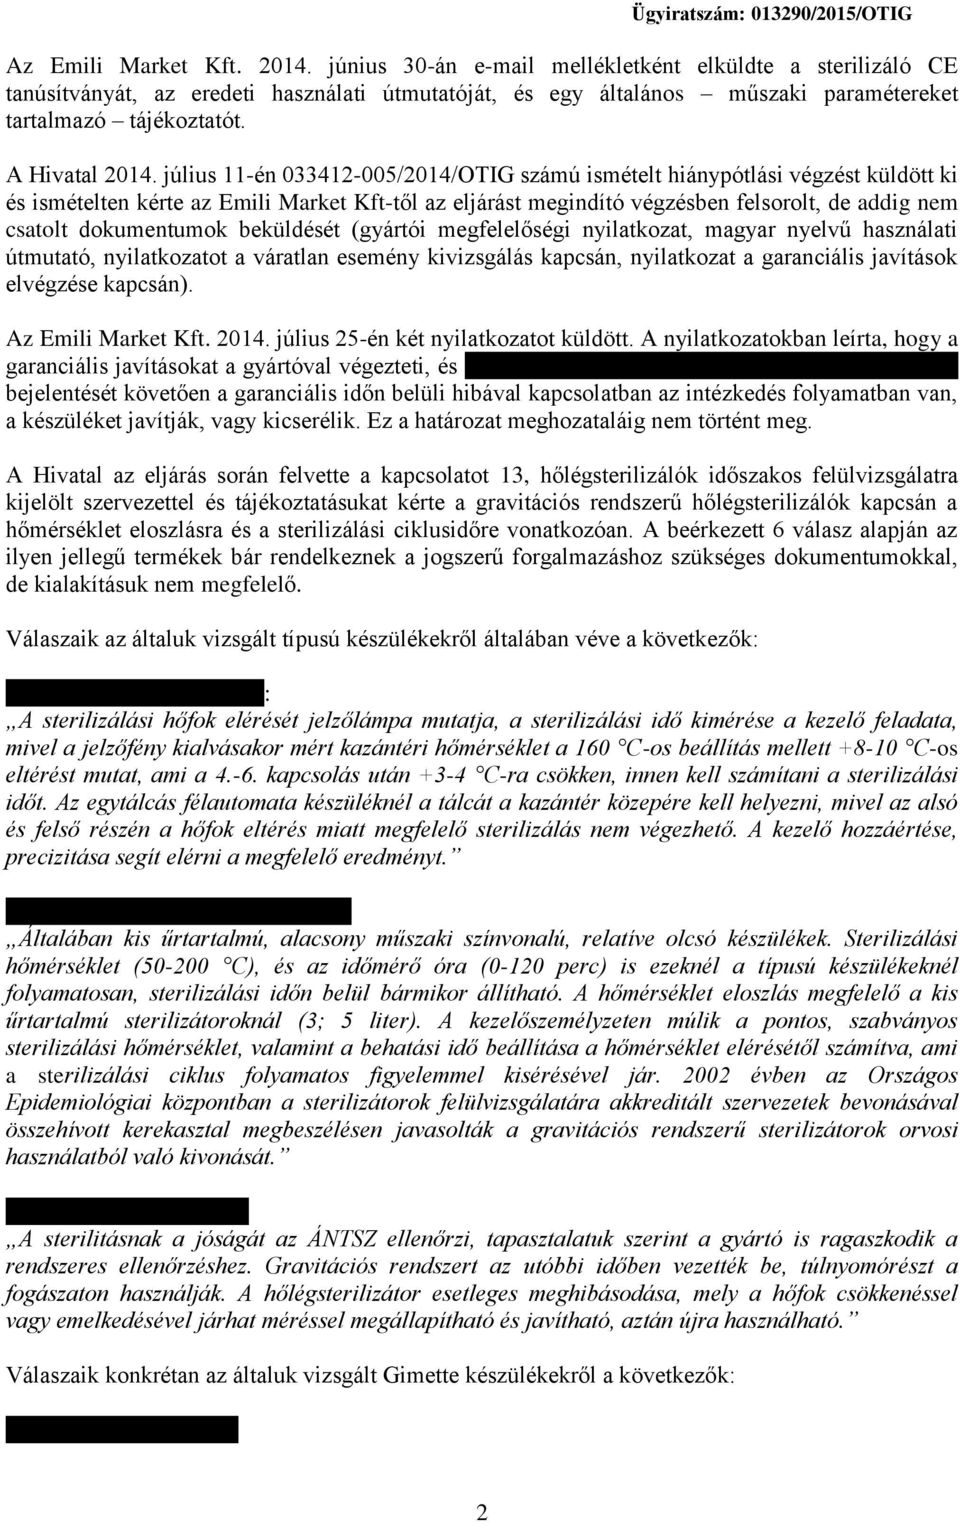 július 11-én 033412-005/2014/OTIG számú ismételt hiánypótlási végzést küldött ki és ismételten kérte az Emili Market Kft-től az eljárást megindító végzésben felsorolt, de addig nem csatolt